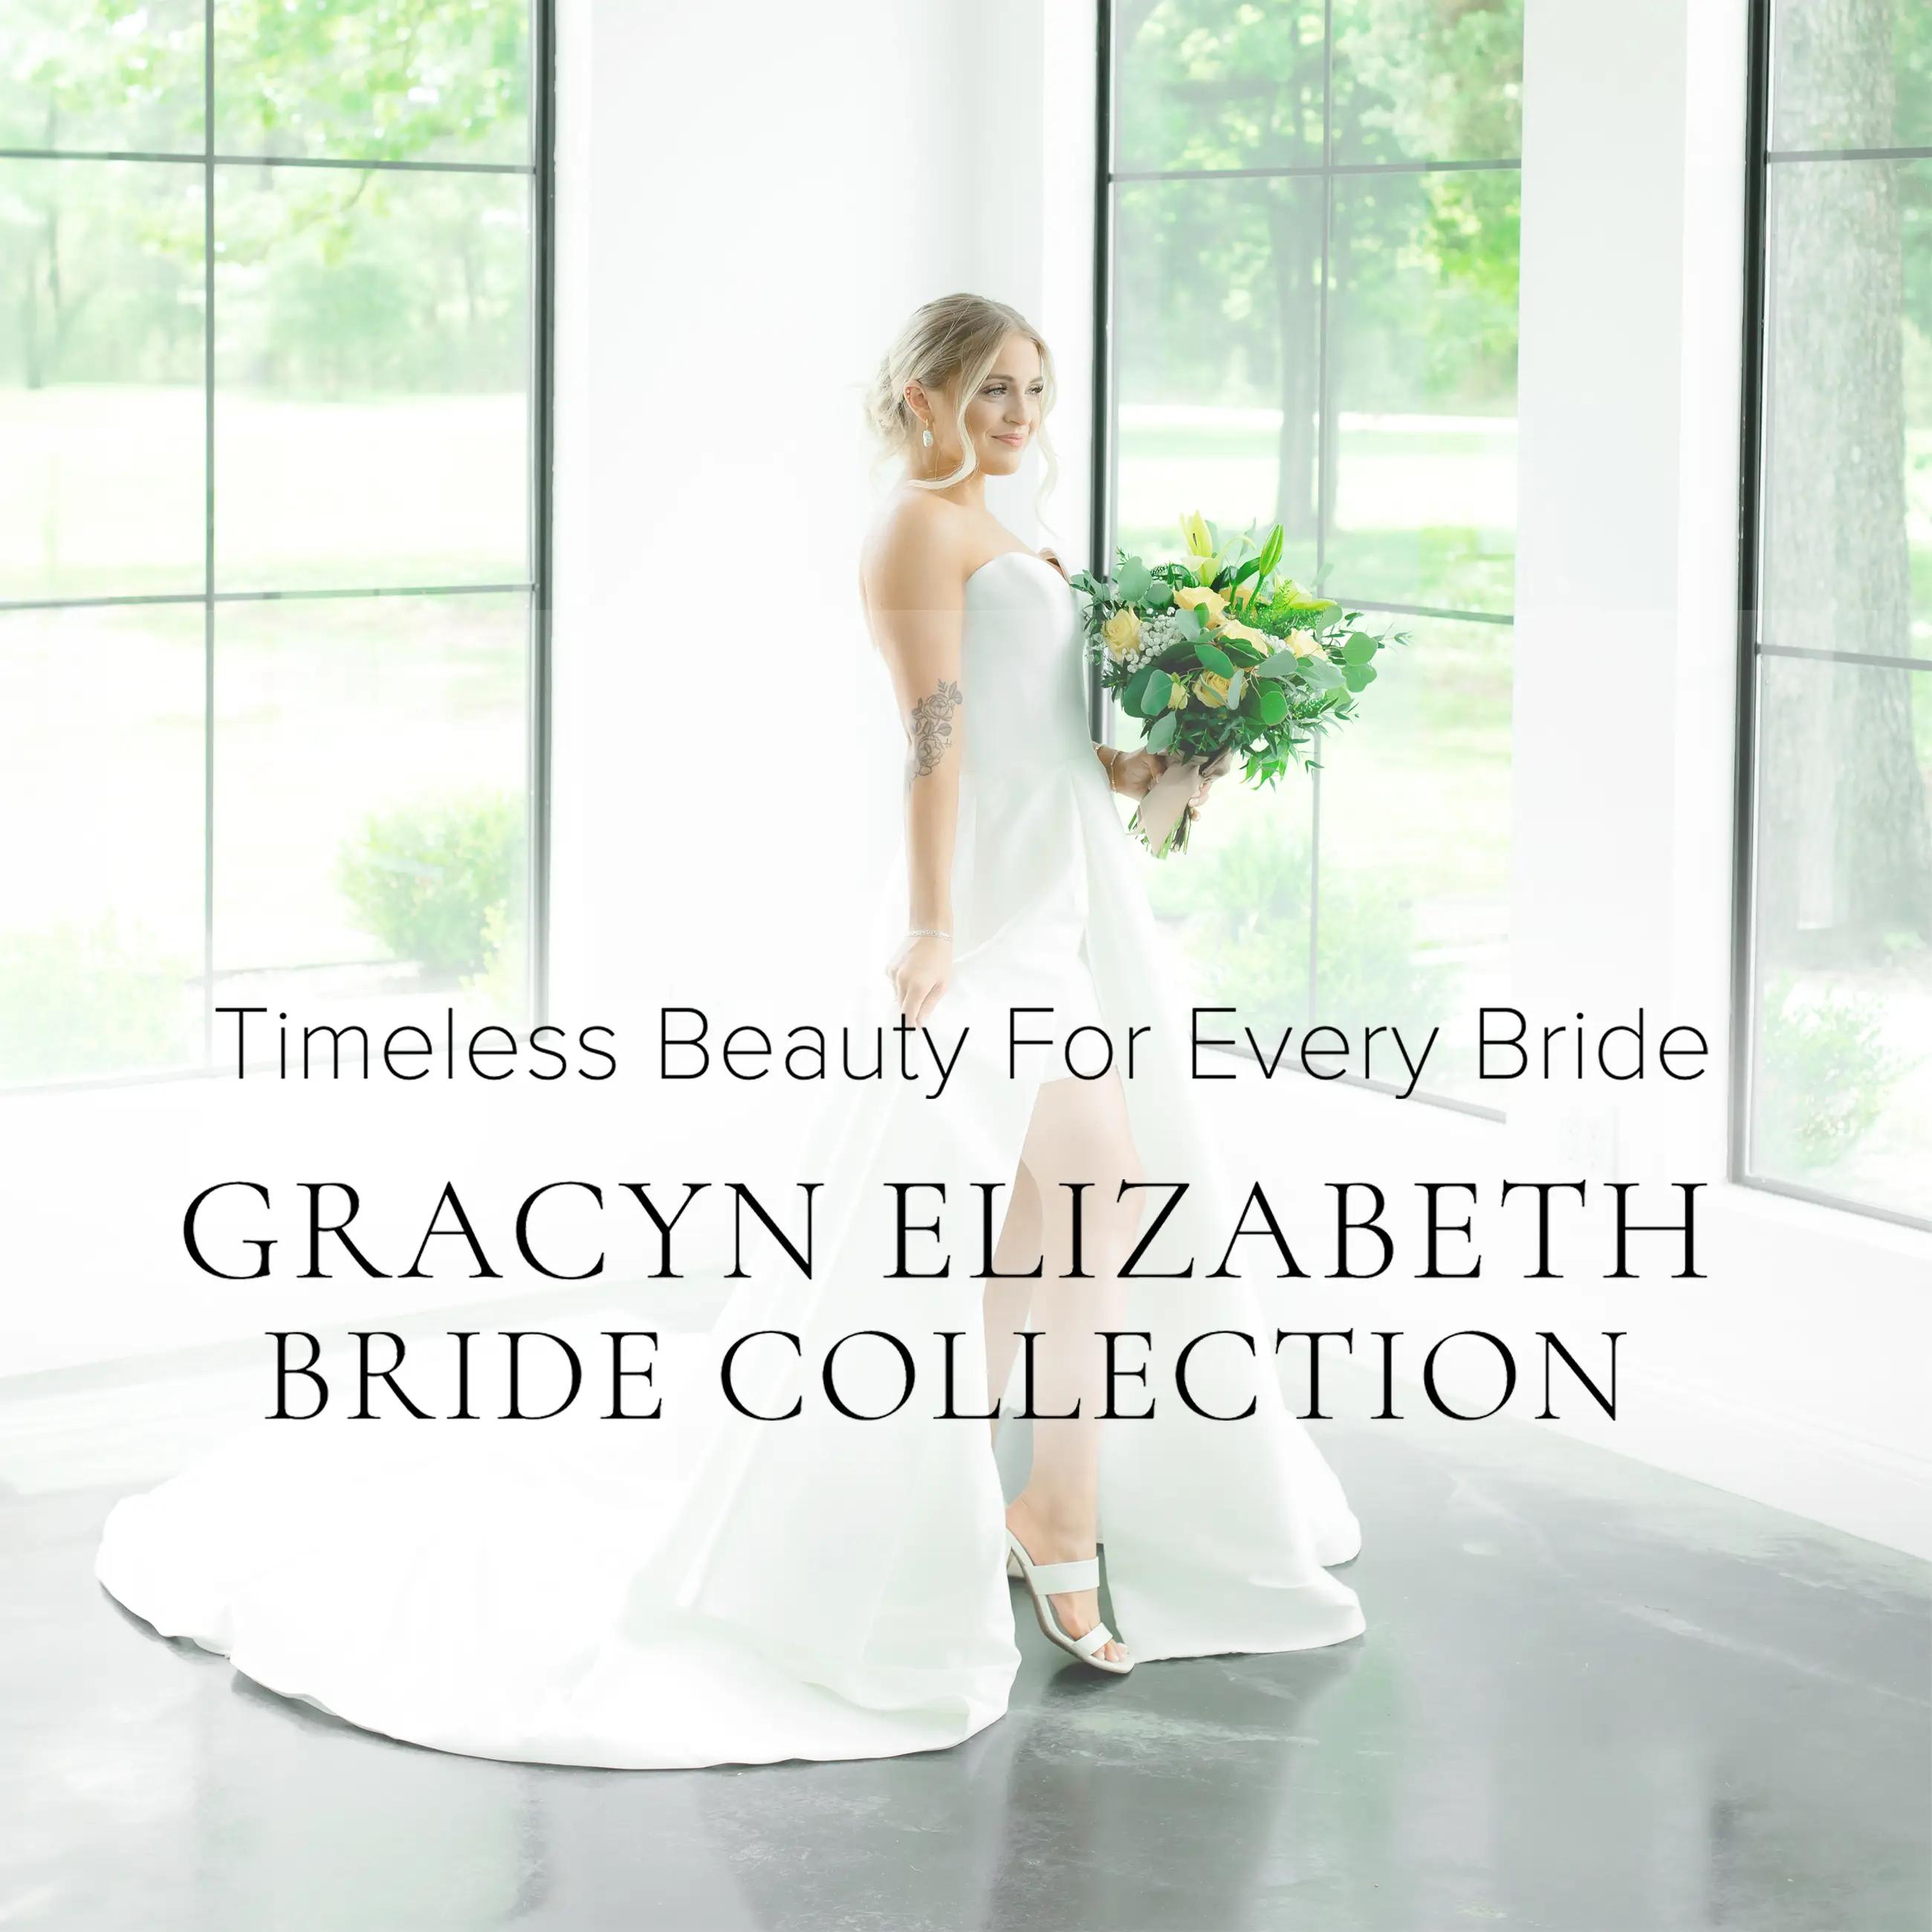 Gracyn Elizabeth Bride Collection